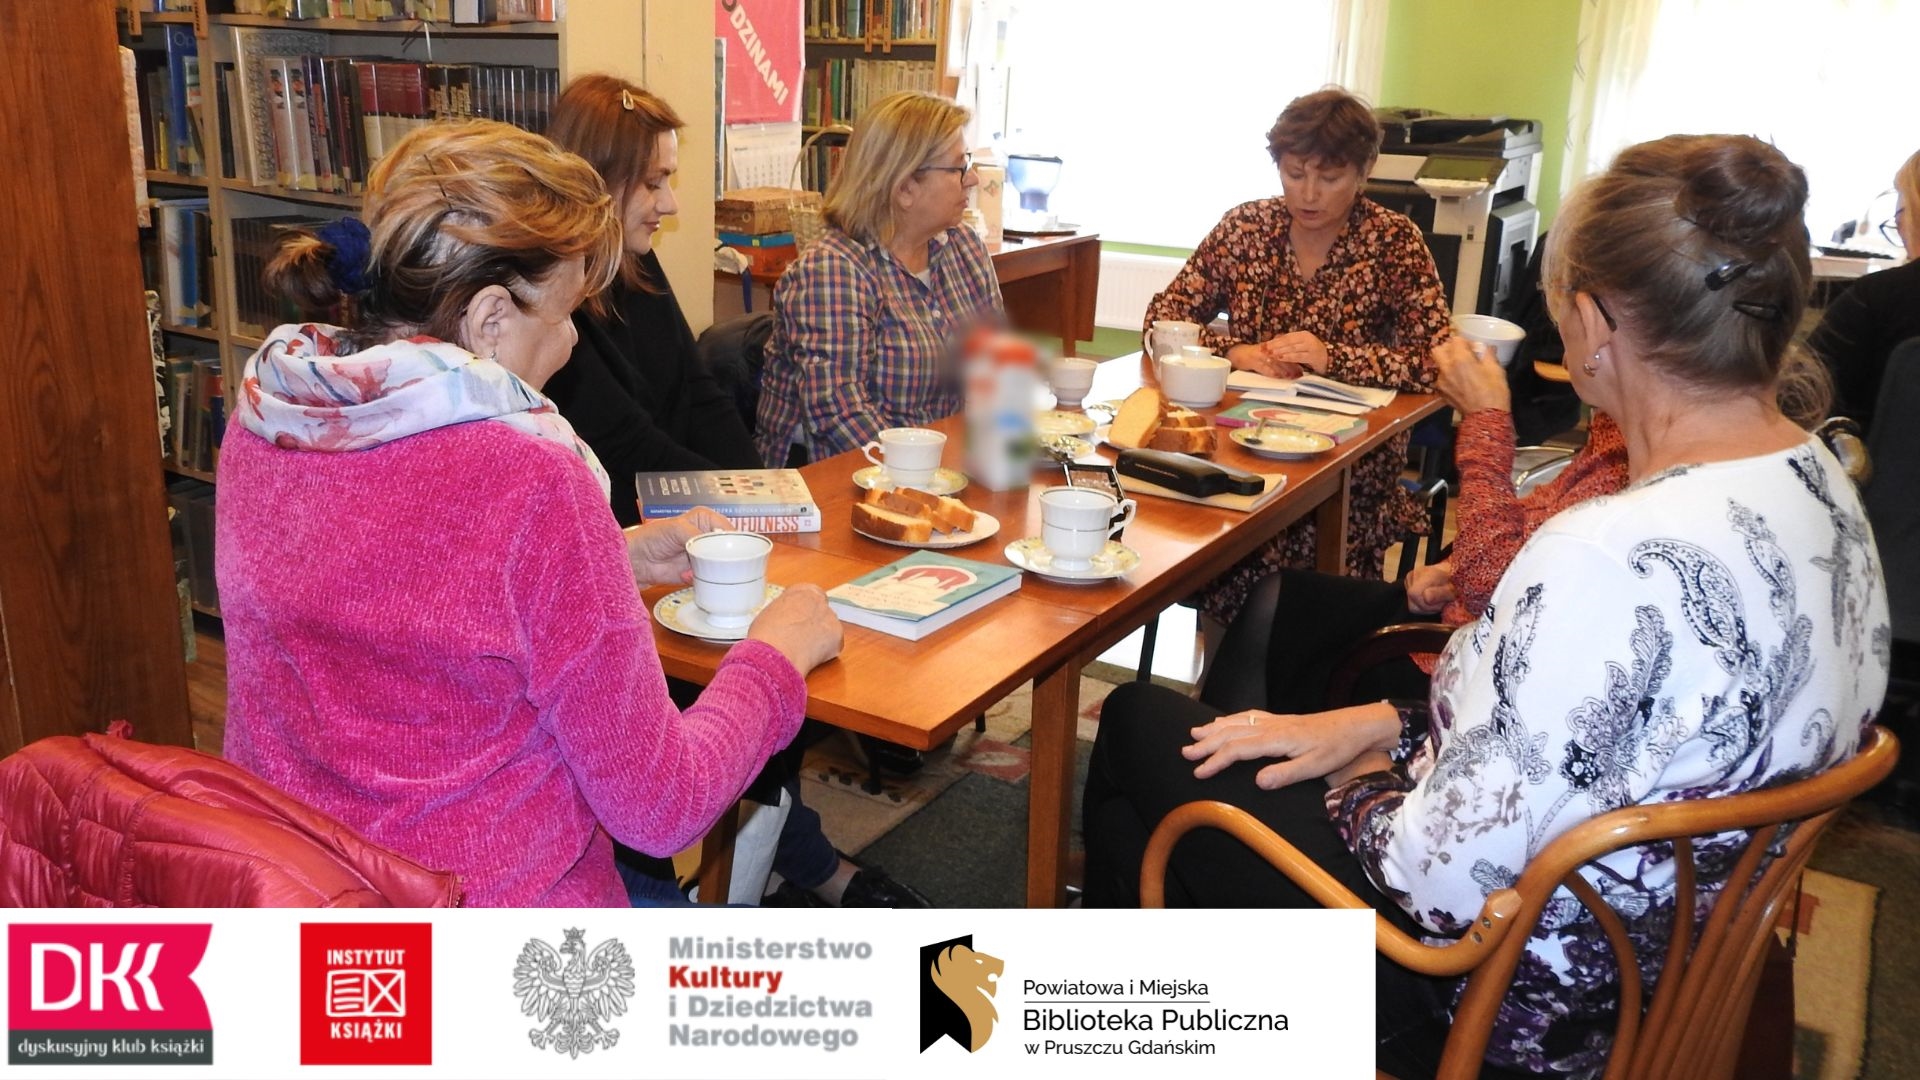 Członkinie Dyskusyjnego Klubu Książki dla dorołsych podczas spotkania we wrześniu (5 osób) oraz moderatorka Anna Krawycińska. Na stole leżą książki, kartki z notatkami oraz stoją filiżanki z kawą, ciastka i ciasto.